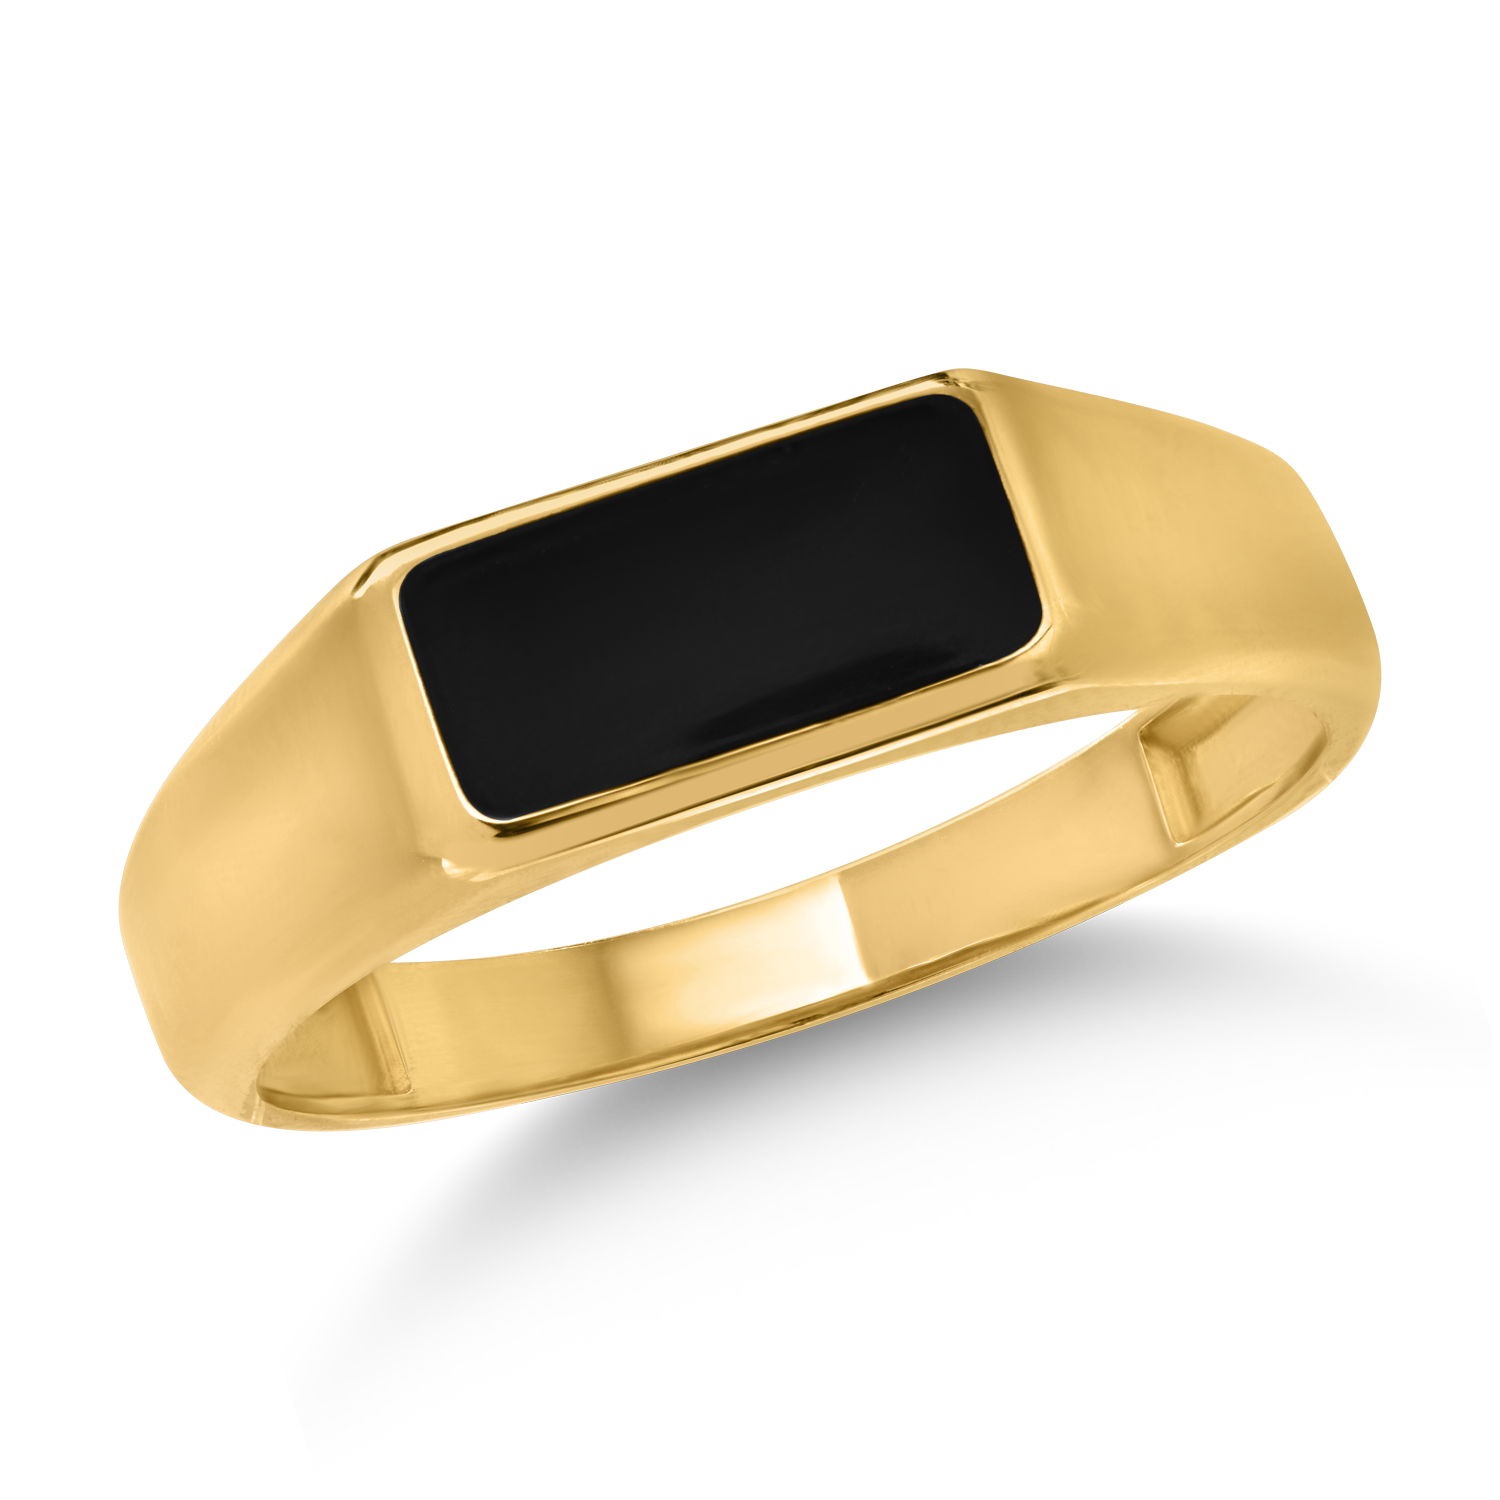 Męski pierścionek z żółtego złota